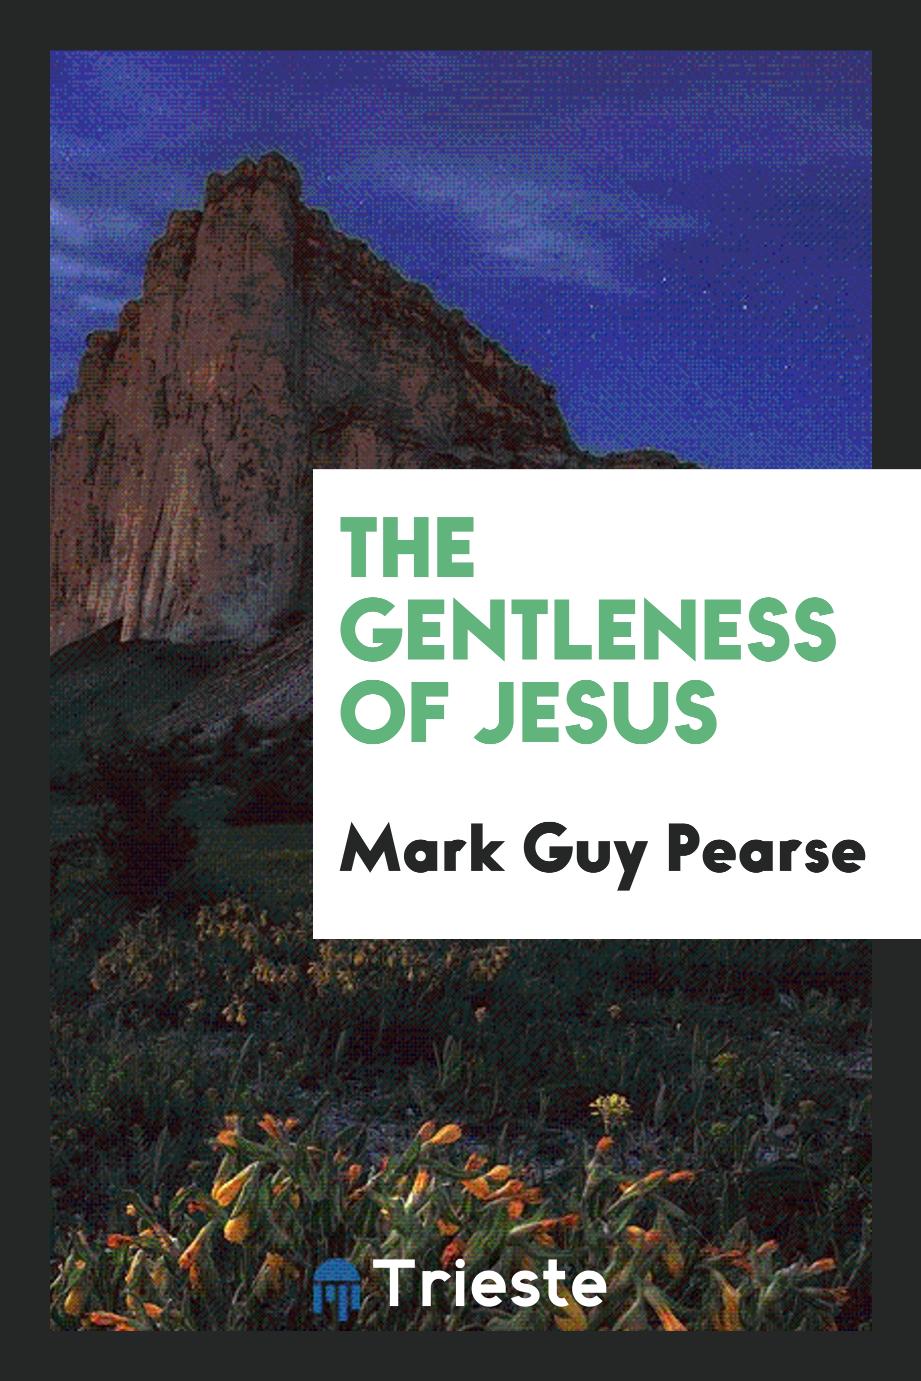 The gentleness of Jesus